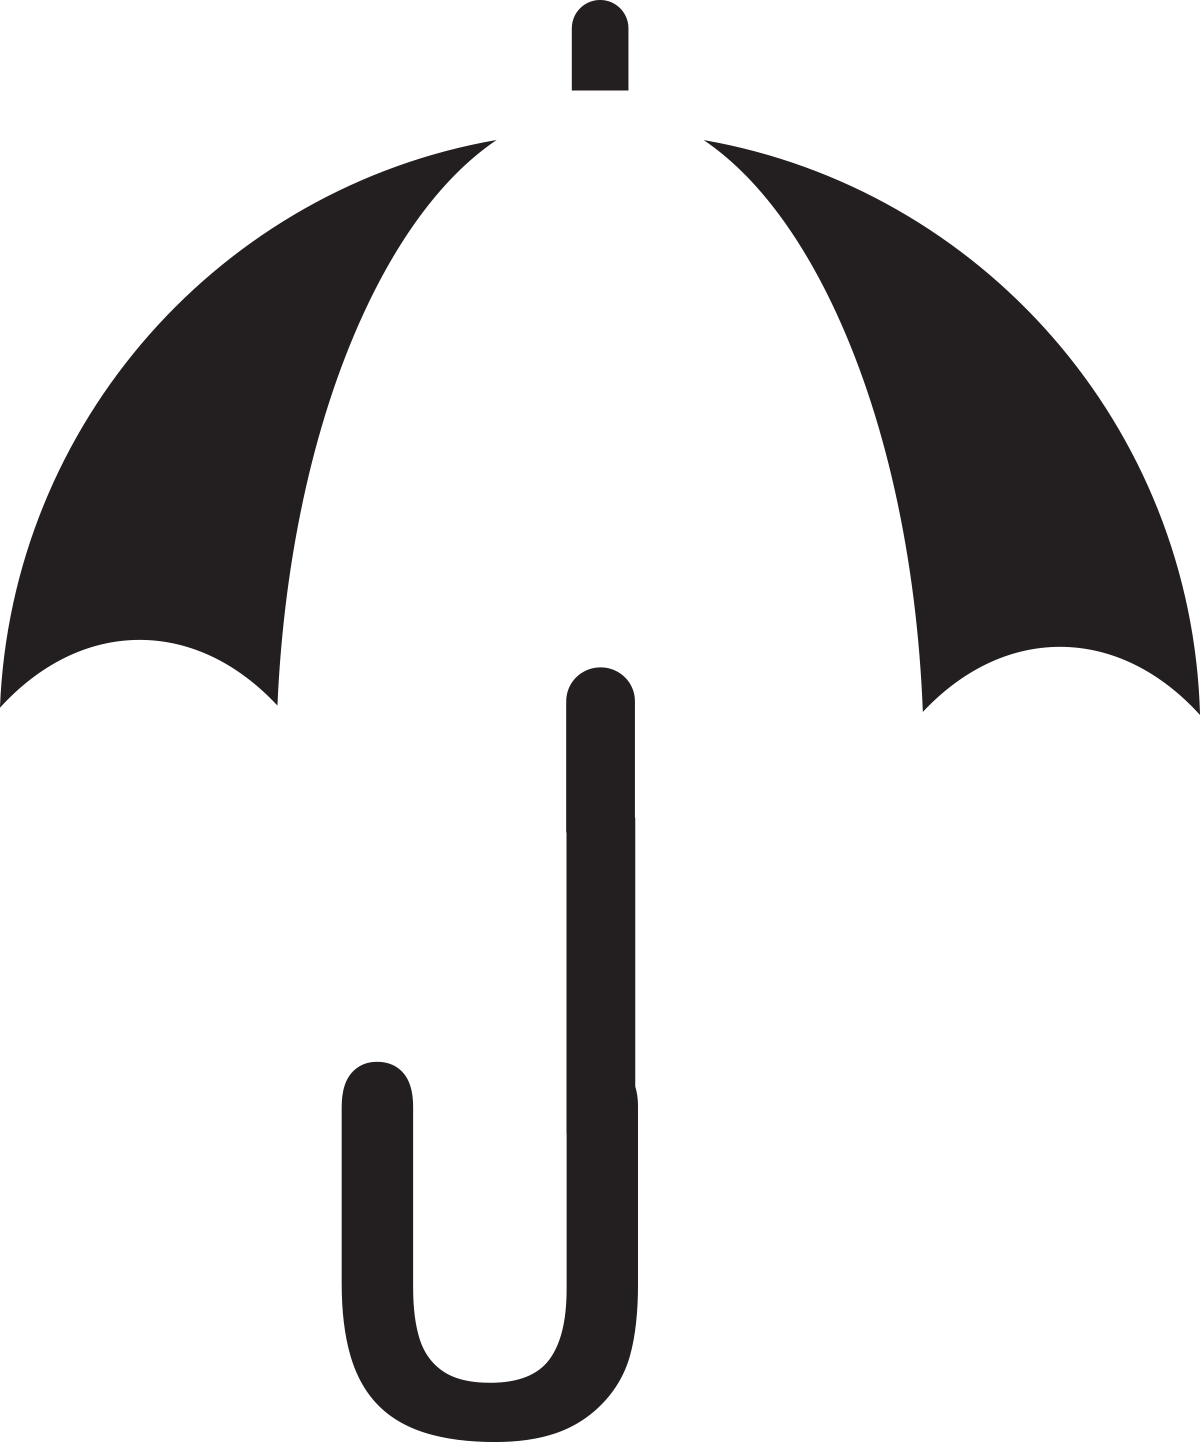 מטריה בשחור לבן עם ידית בצורת U